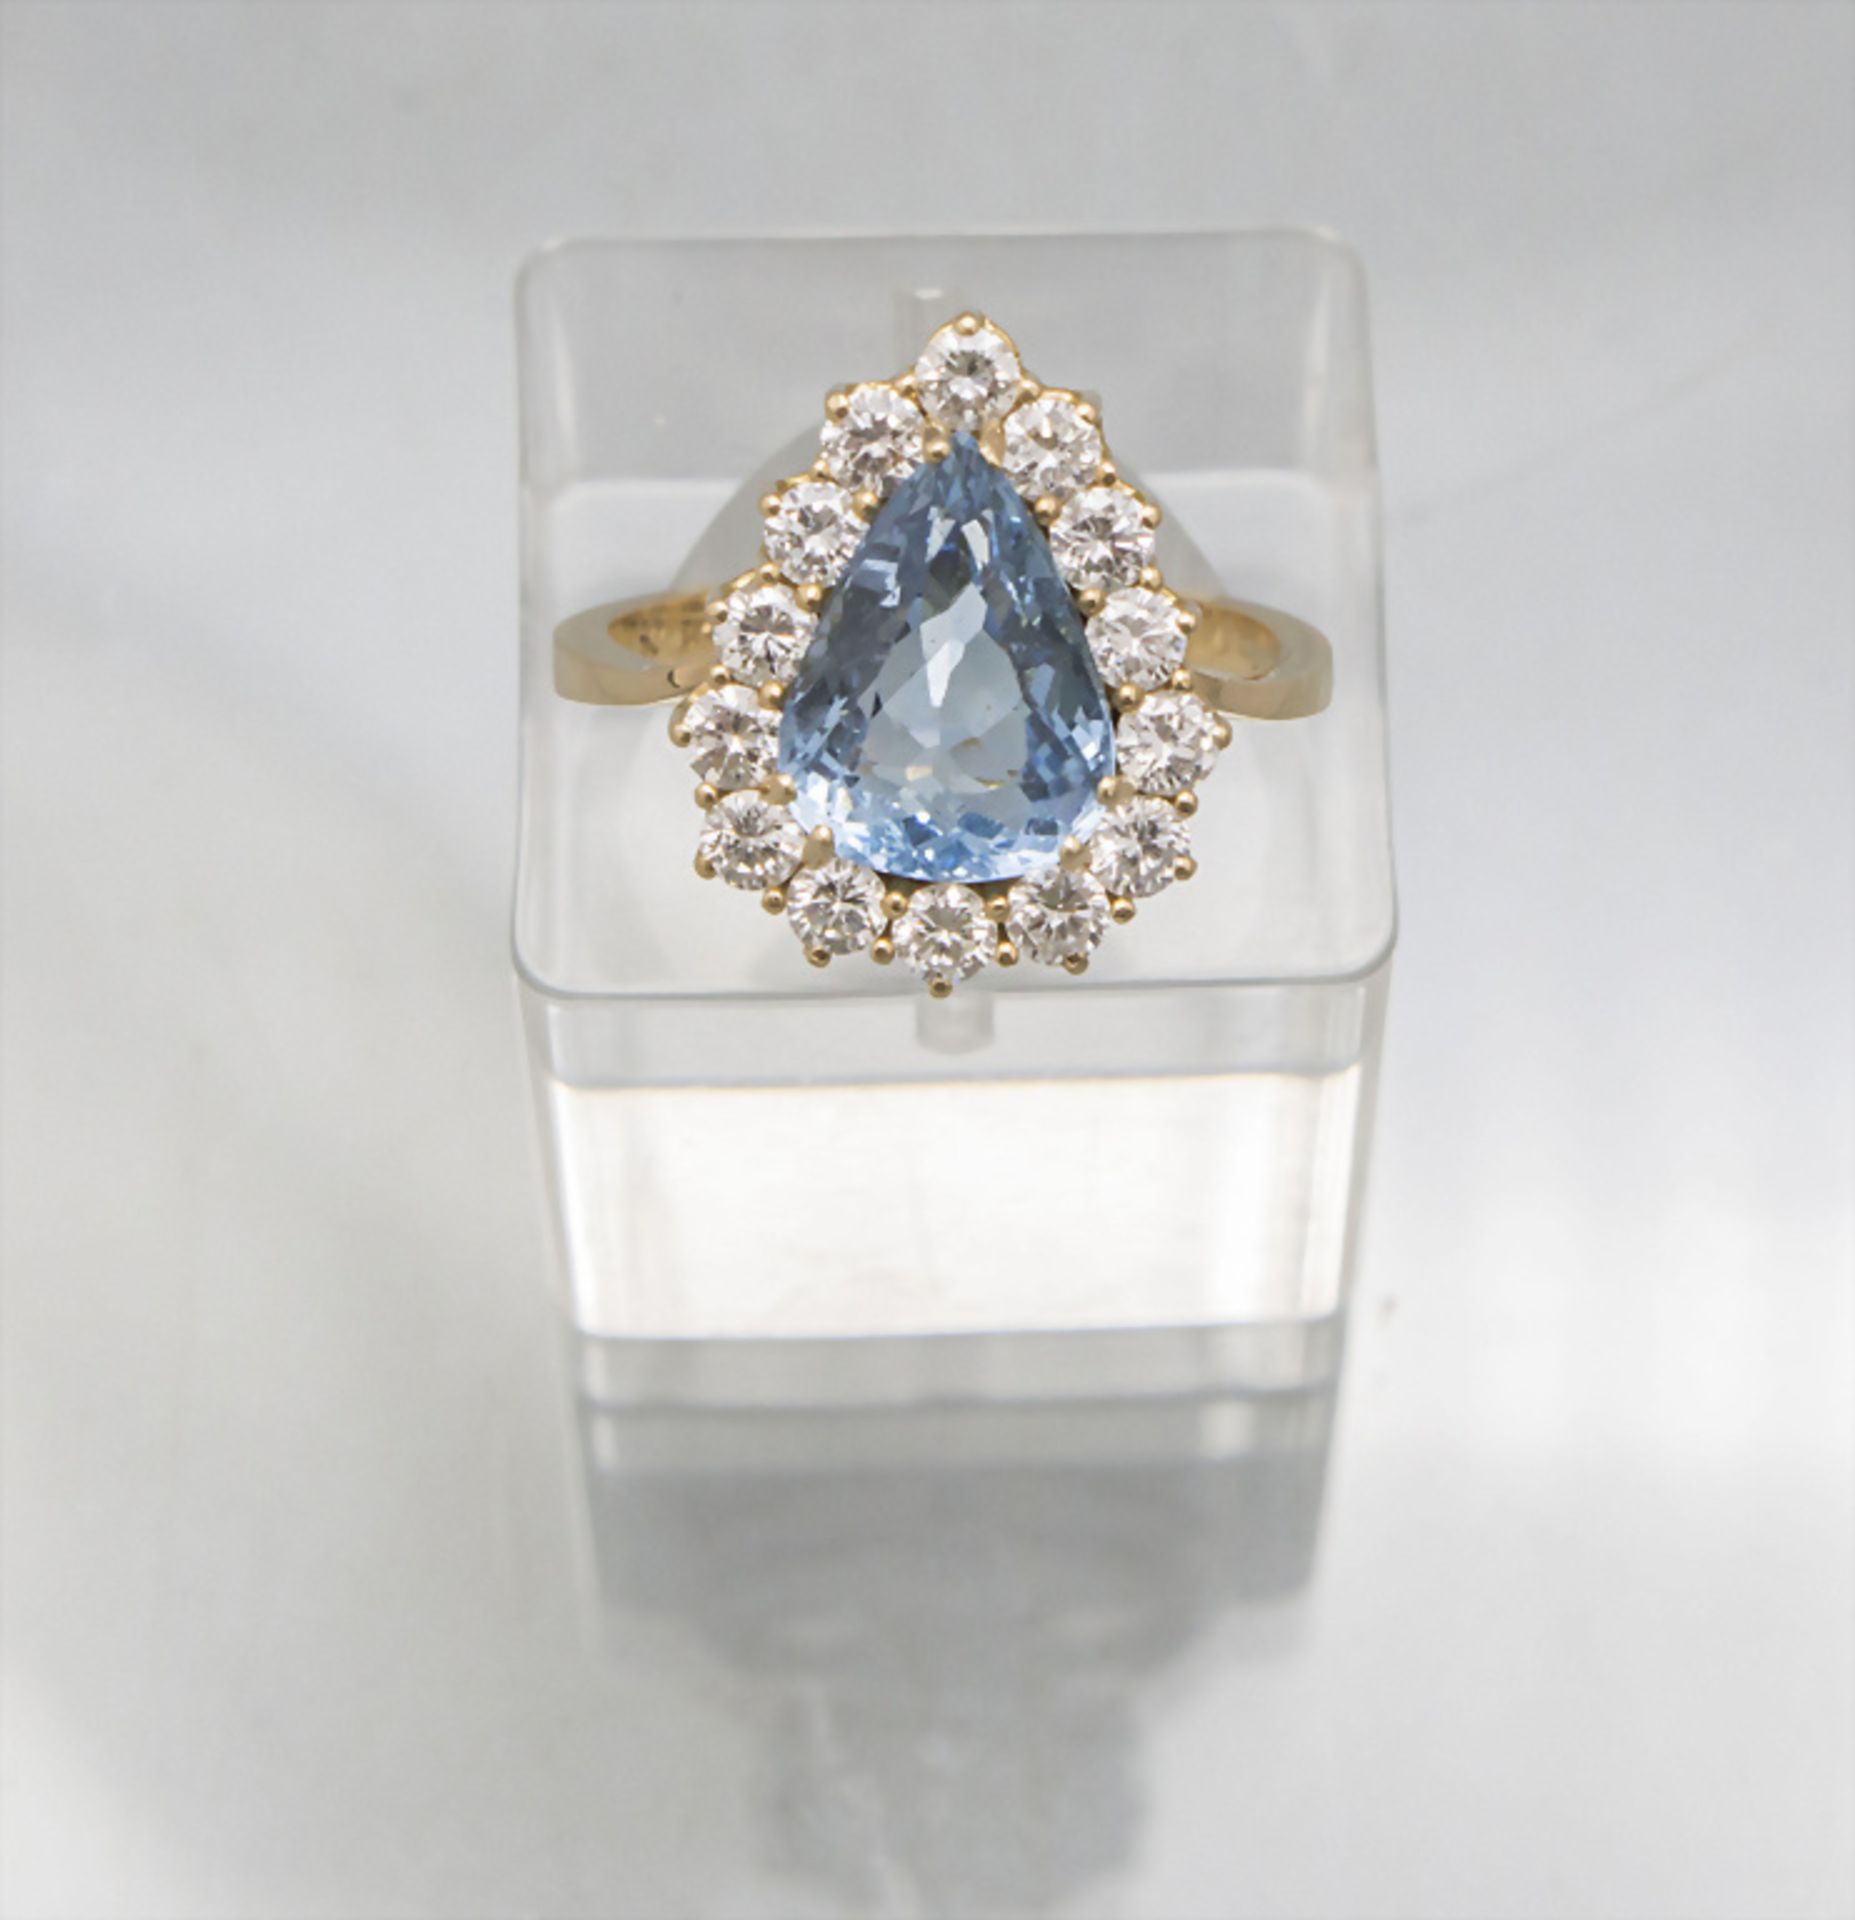 Damenring mit Aquamarin und Diamanten / A ladies 18 ct gold ring with natural aquamarine and ...